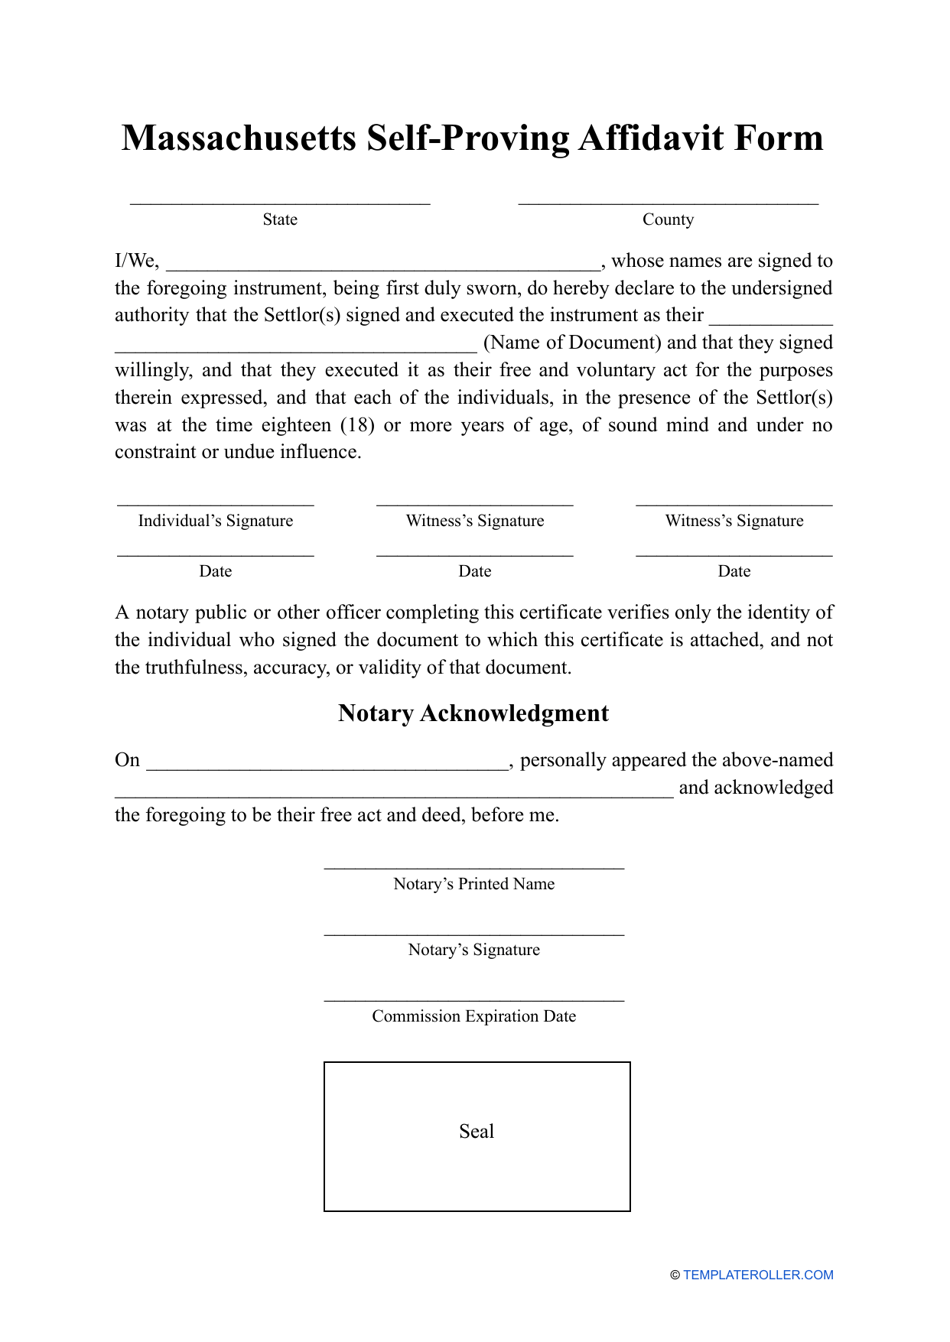 Self-proving Affidavit Form - Massachusetts, Page 1